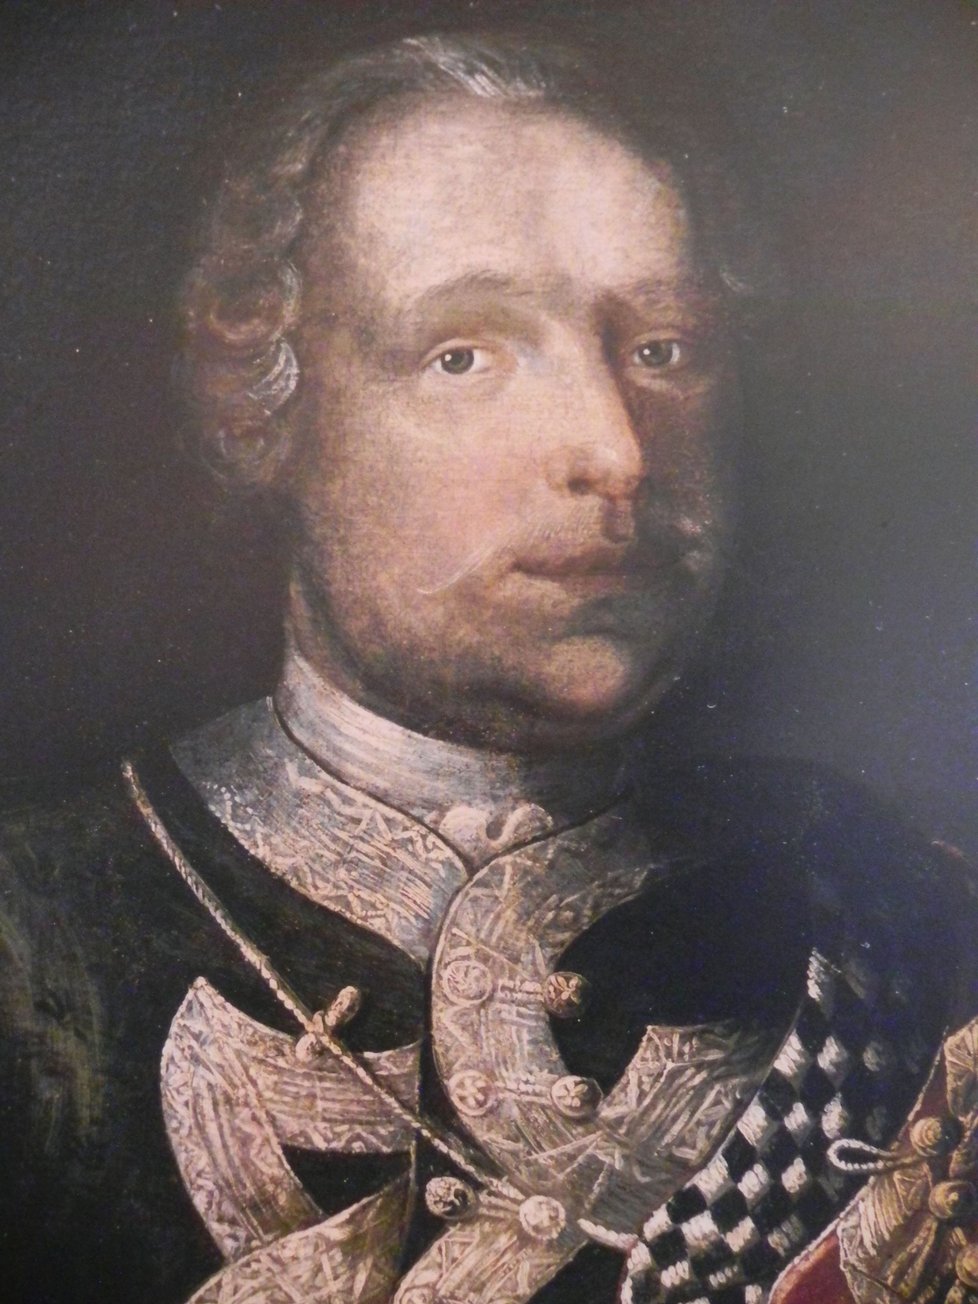 Dobový portrét barona Trencka před polovinou 18. století